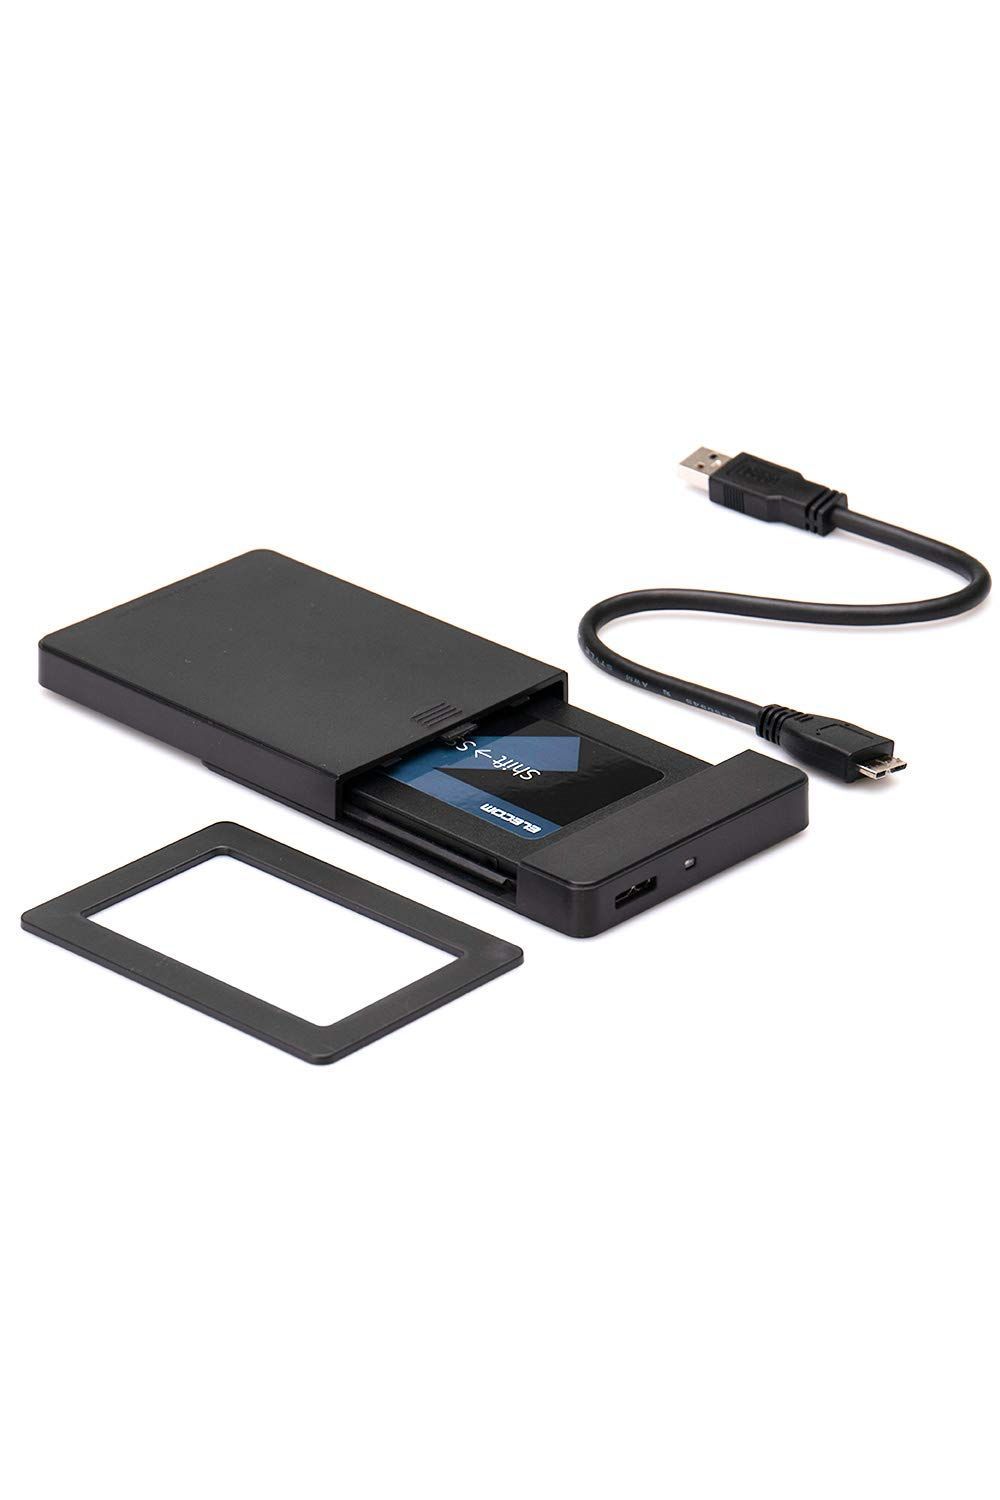 SSD 換装キット 480GB クローンソフト 内蔵 SSD HDD 2.5インチ 7mm 9.5mm 変換スペーサー バックアップ データ ロジテック LMD-SS480KU3